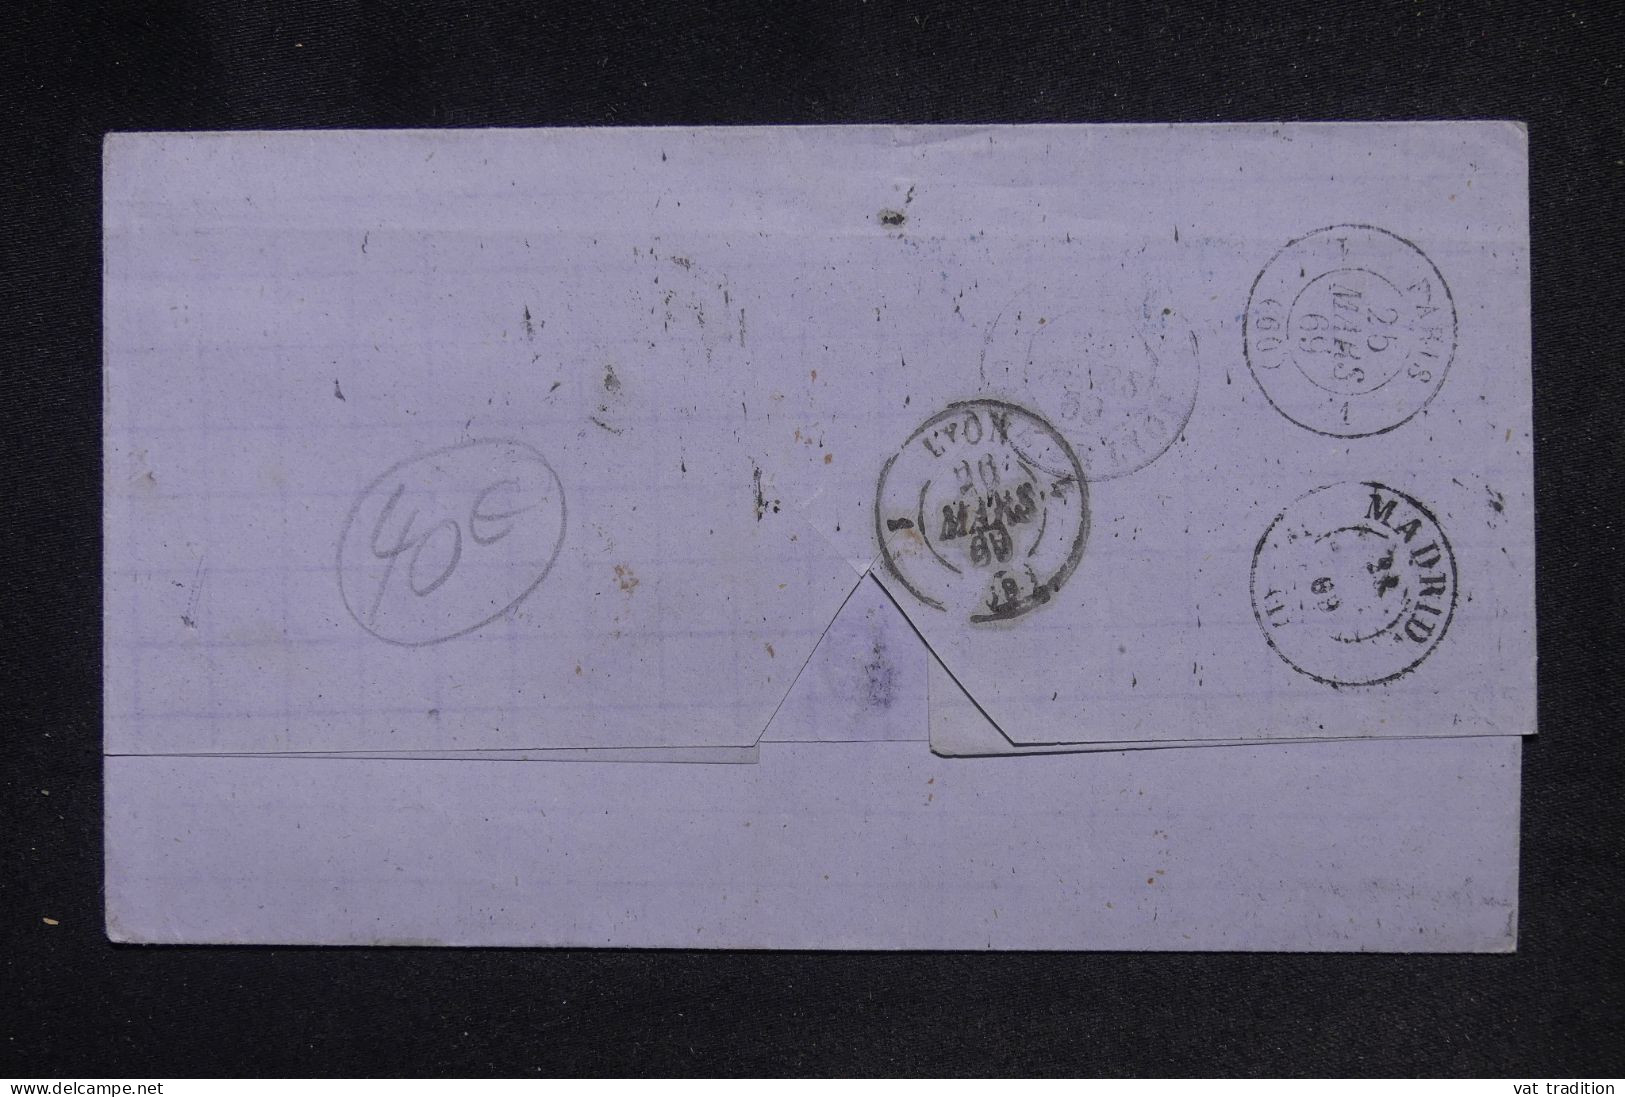 ESPAGNE - Lettre De Sévilla Pour La France En 1869 - L 147789 - Lettres & Documents